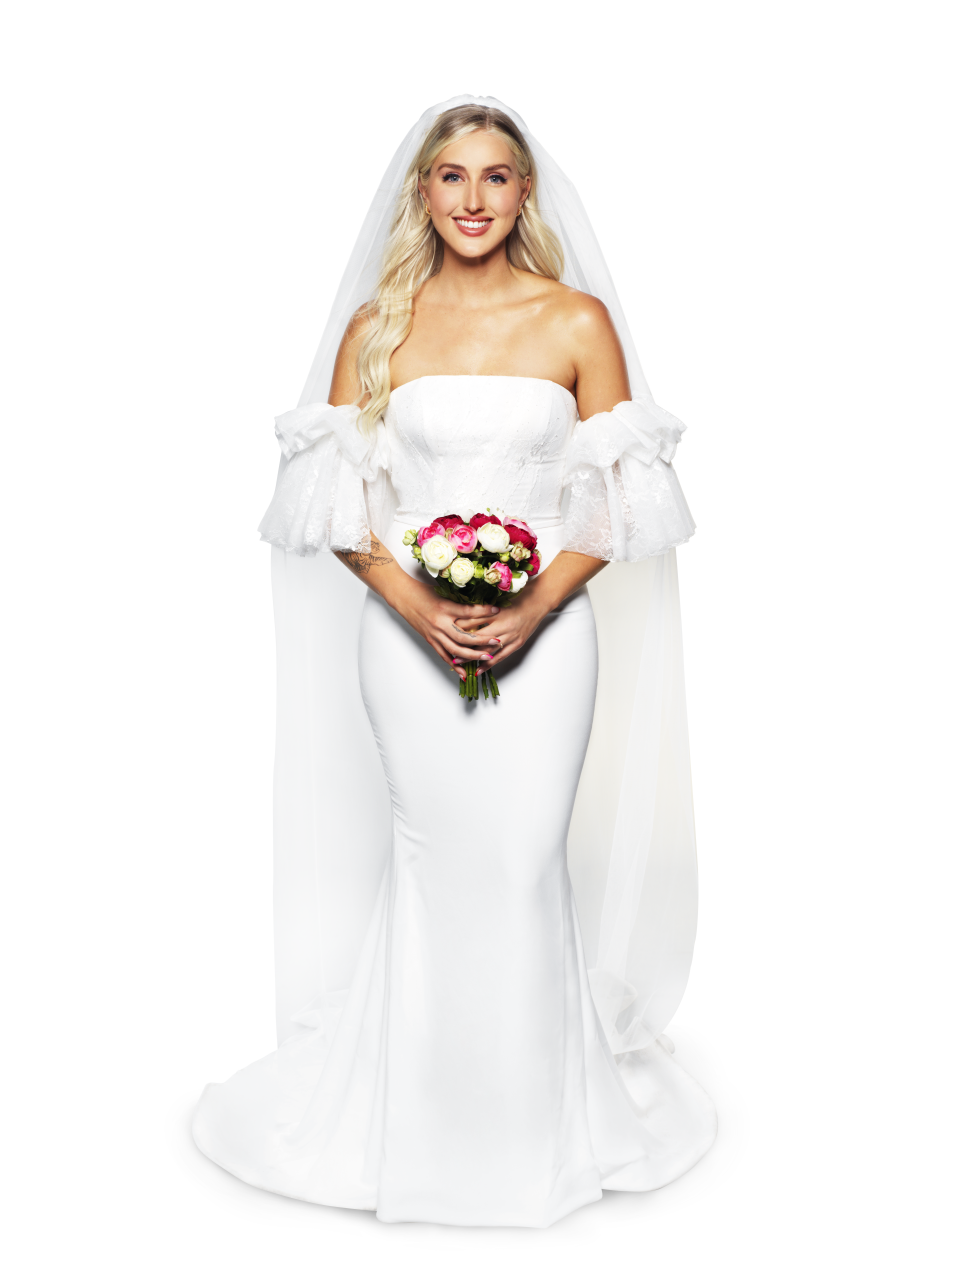 MAFS 2022 Bride Samantha from Queensland in her wedding dress